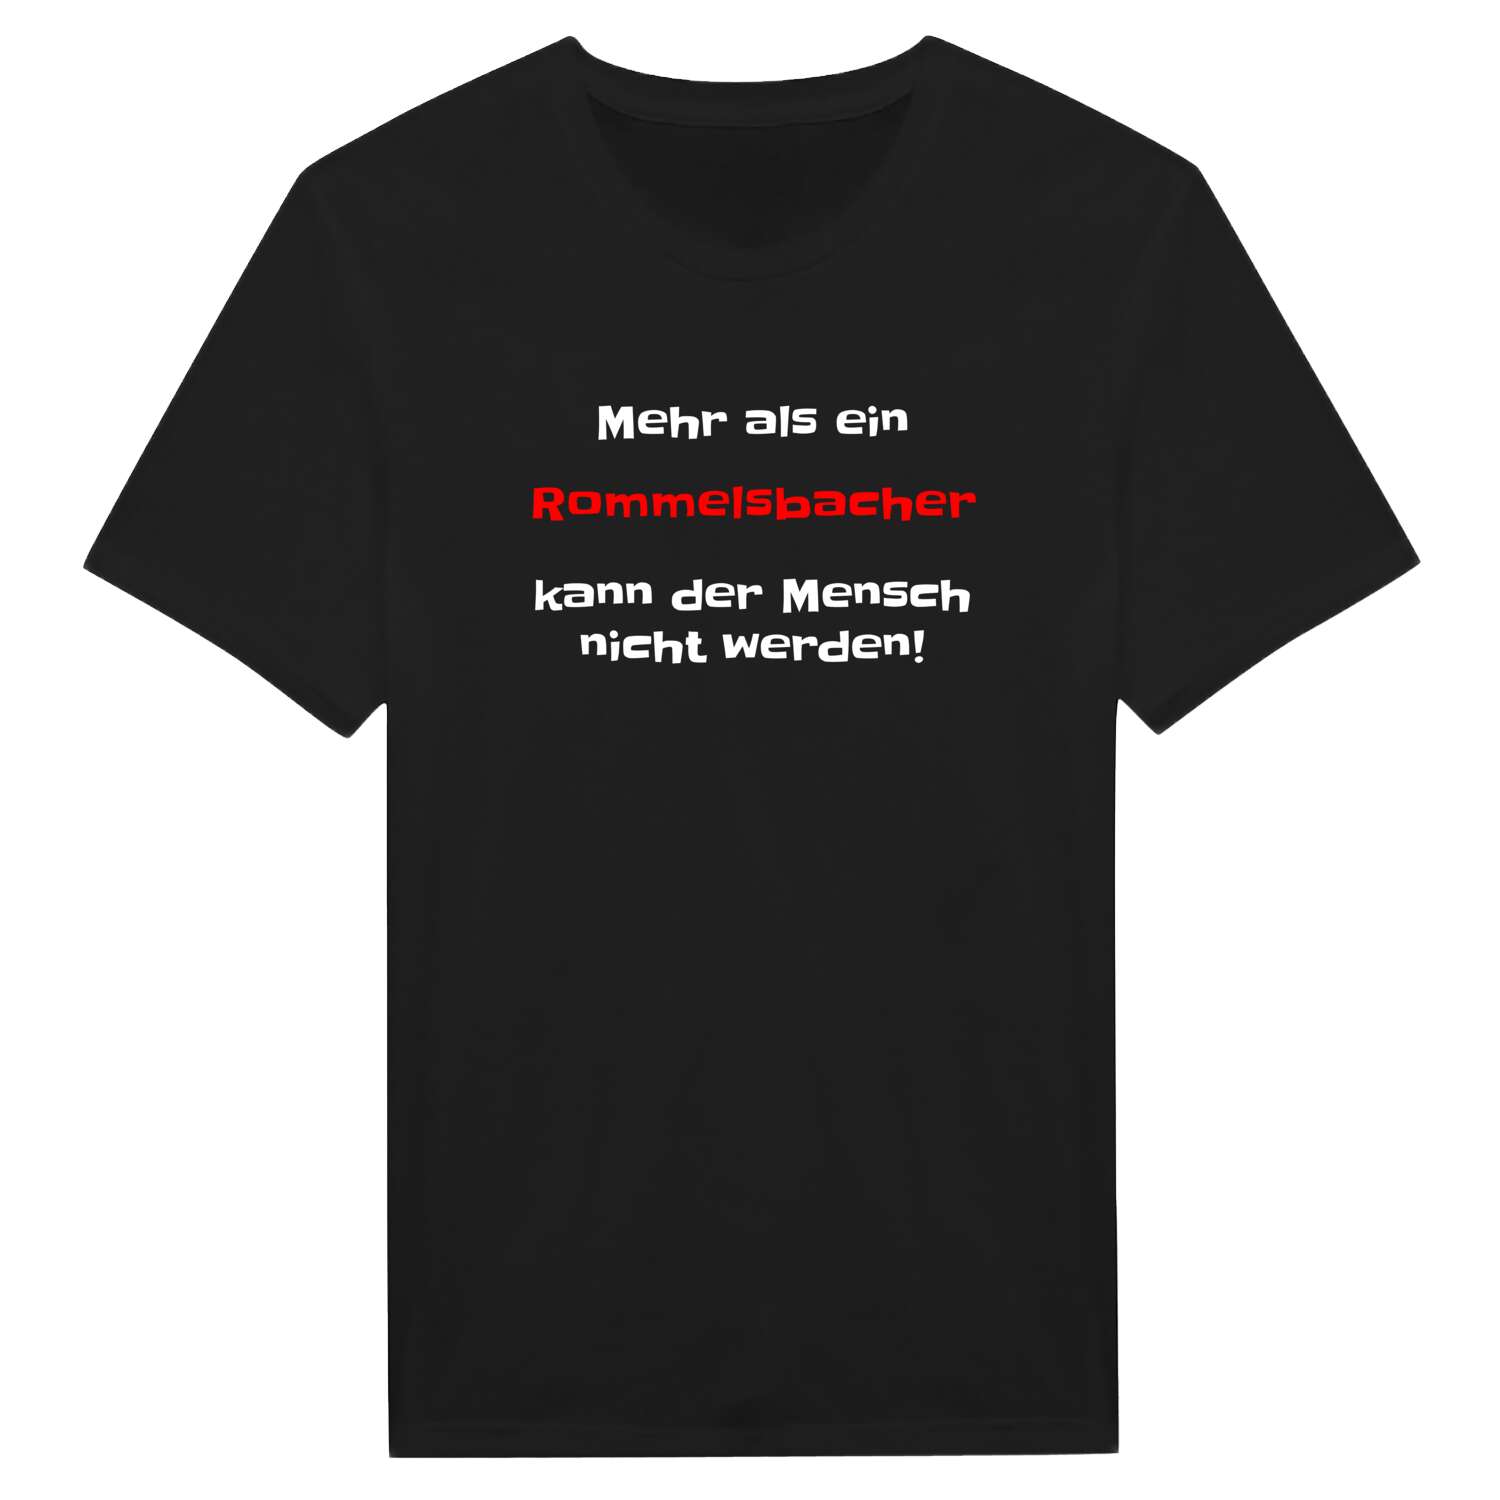 Rommelsbach T-Shirt »Mehr als ein«